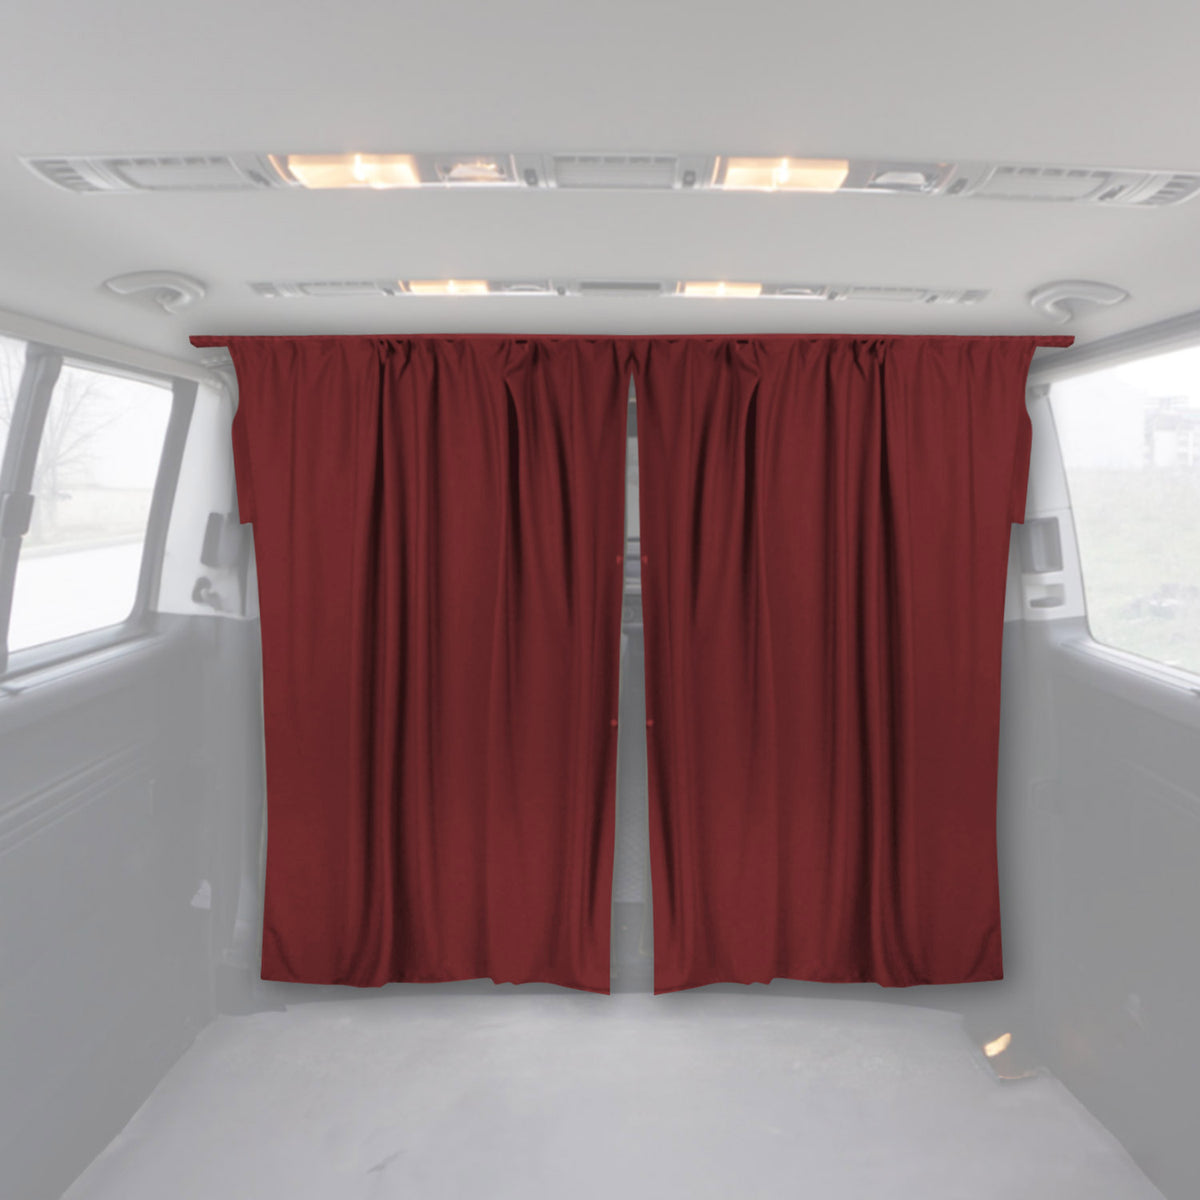 Fahrerhaus Führerhaus Gardinen Sonnenschutz für Nissan Primastar Rot 2tlg